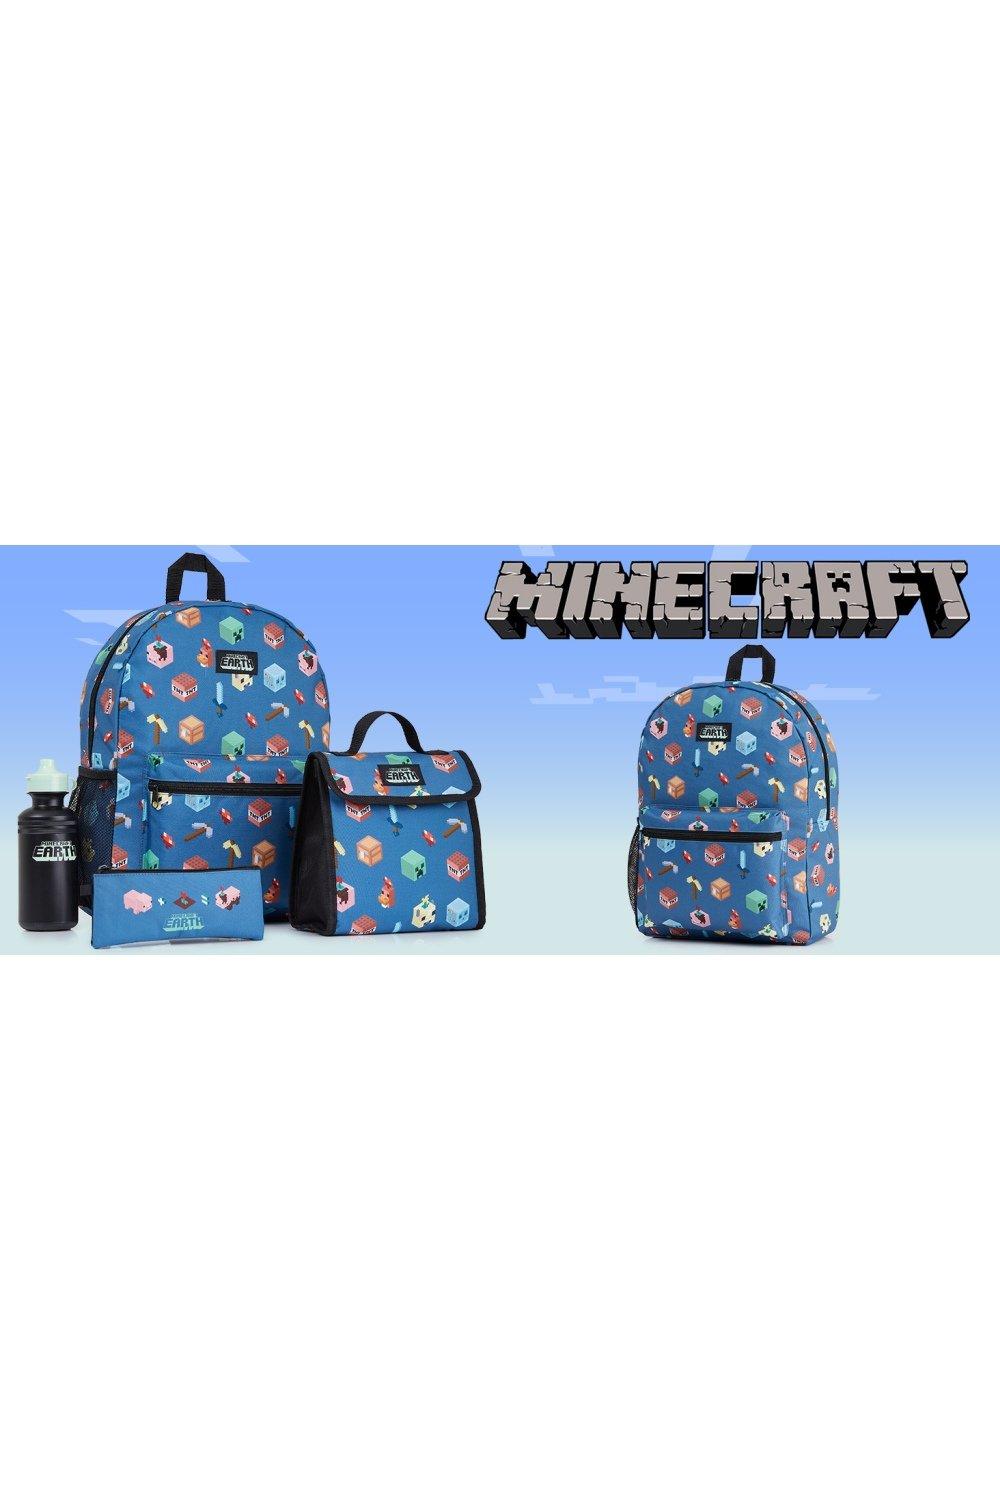 Рюкзак Школьная сумка с сумкой для обеда и пеналом Minecraft, синий синий рюкзак mochila для подростков детей девочек школьников usb сумки для ноутбука мальчиков сумки на плечо дорожный рюкзак